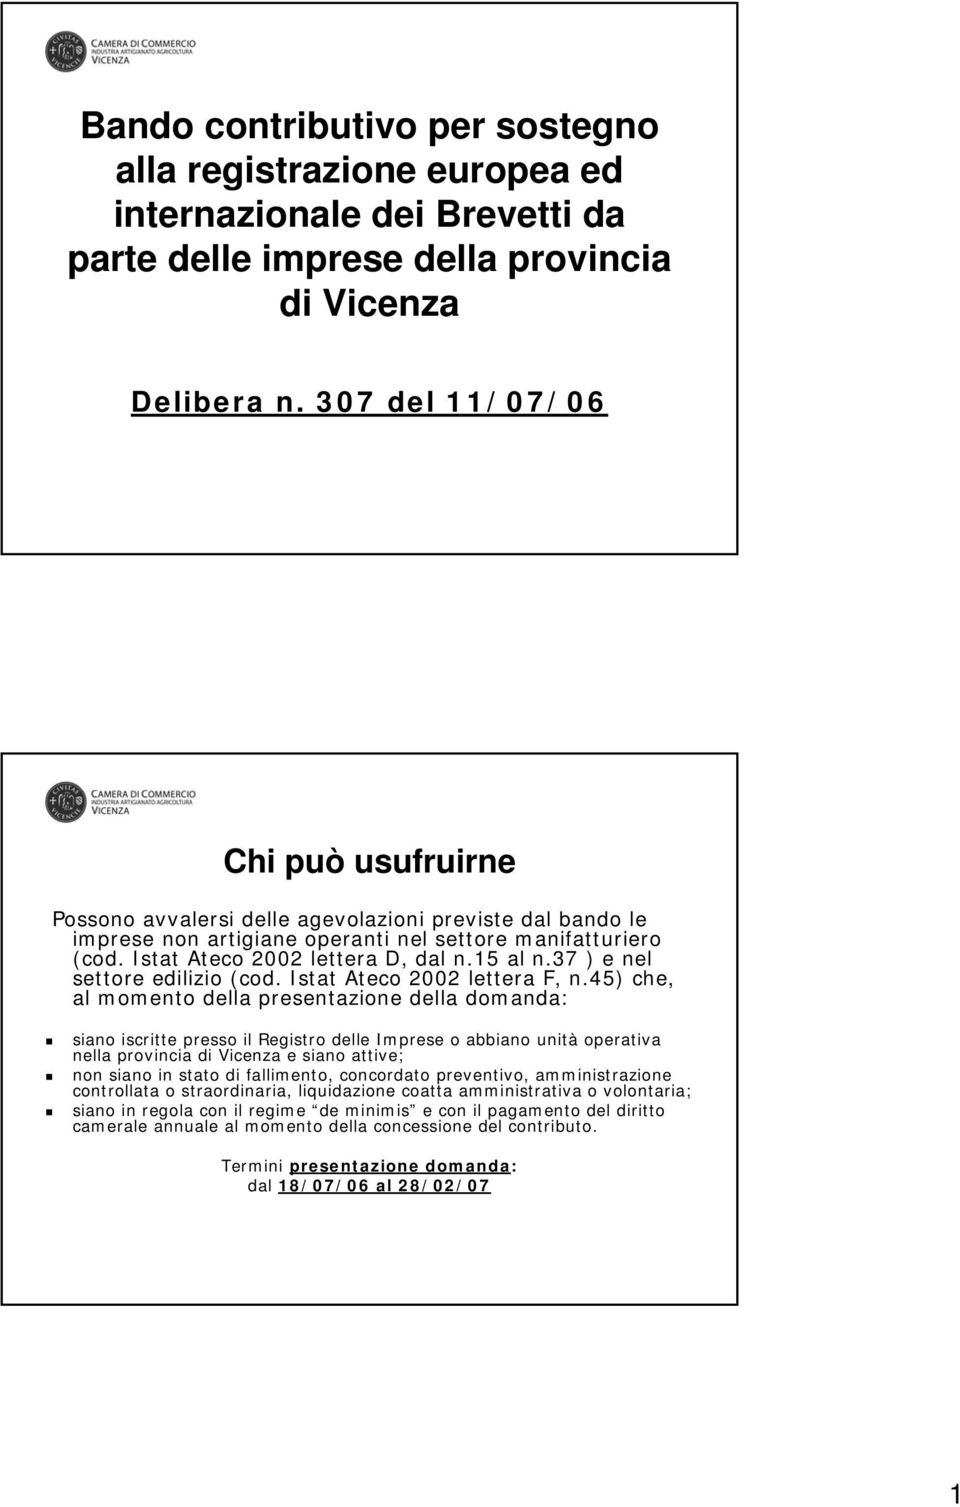 15 al n.37 ) e nel settore edilizio (cod. Istat Ateco 2002 lettera F, n.